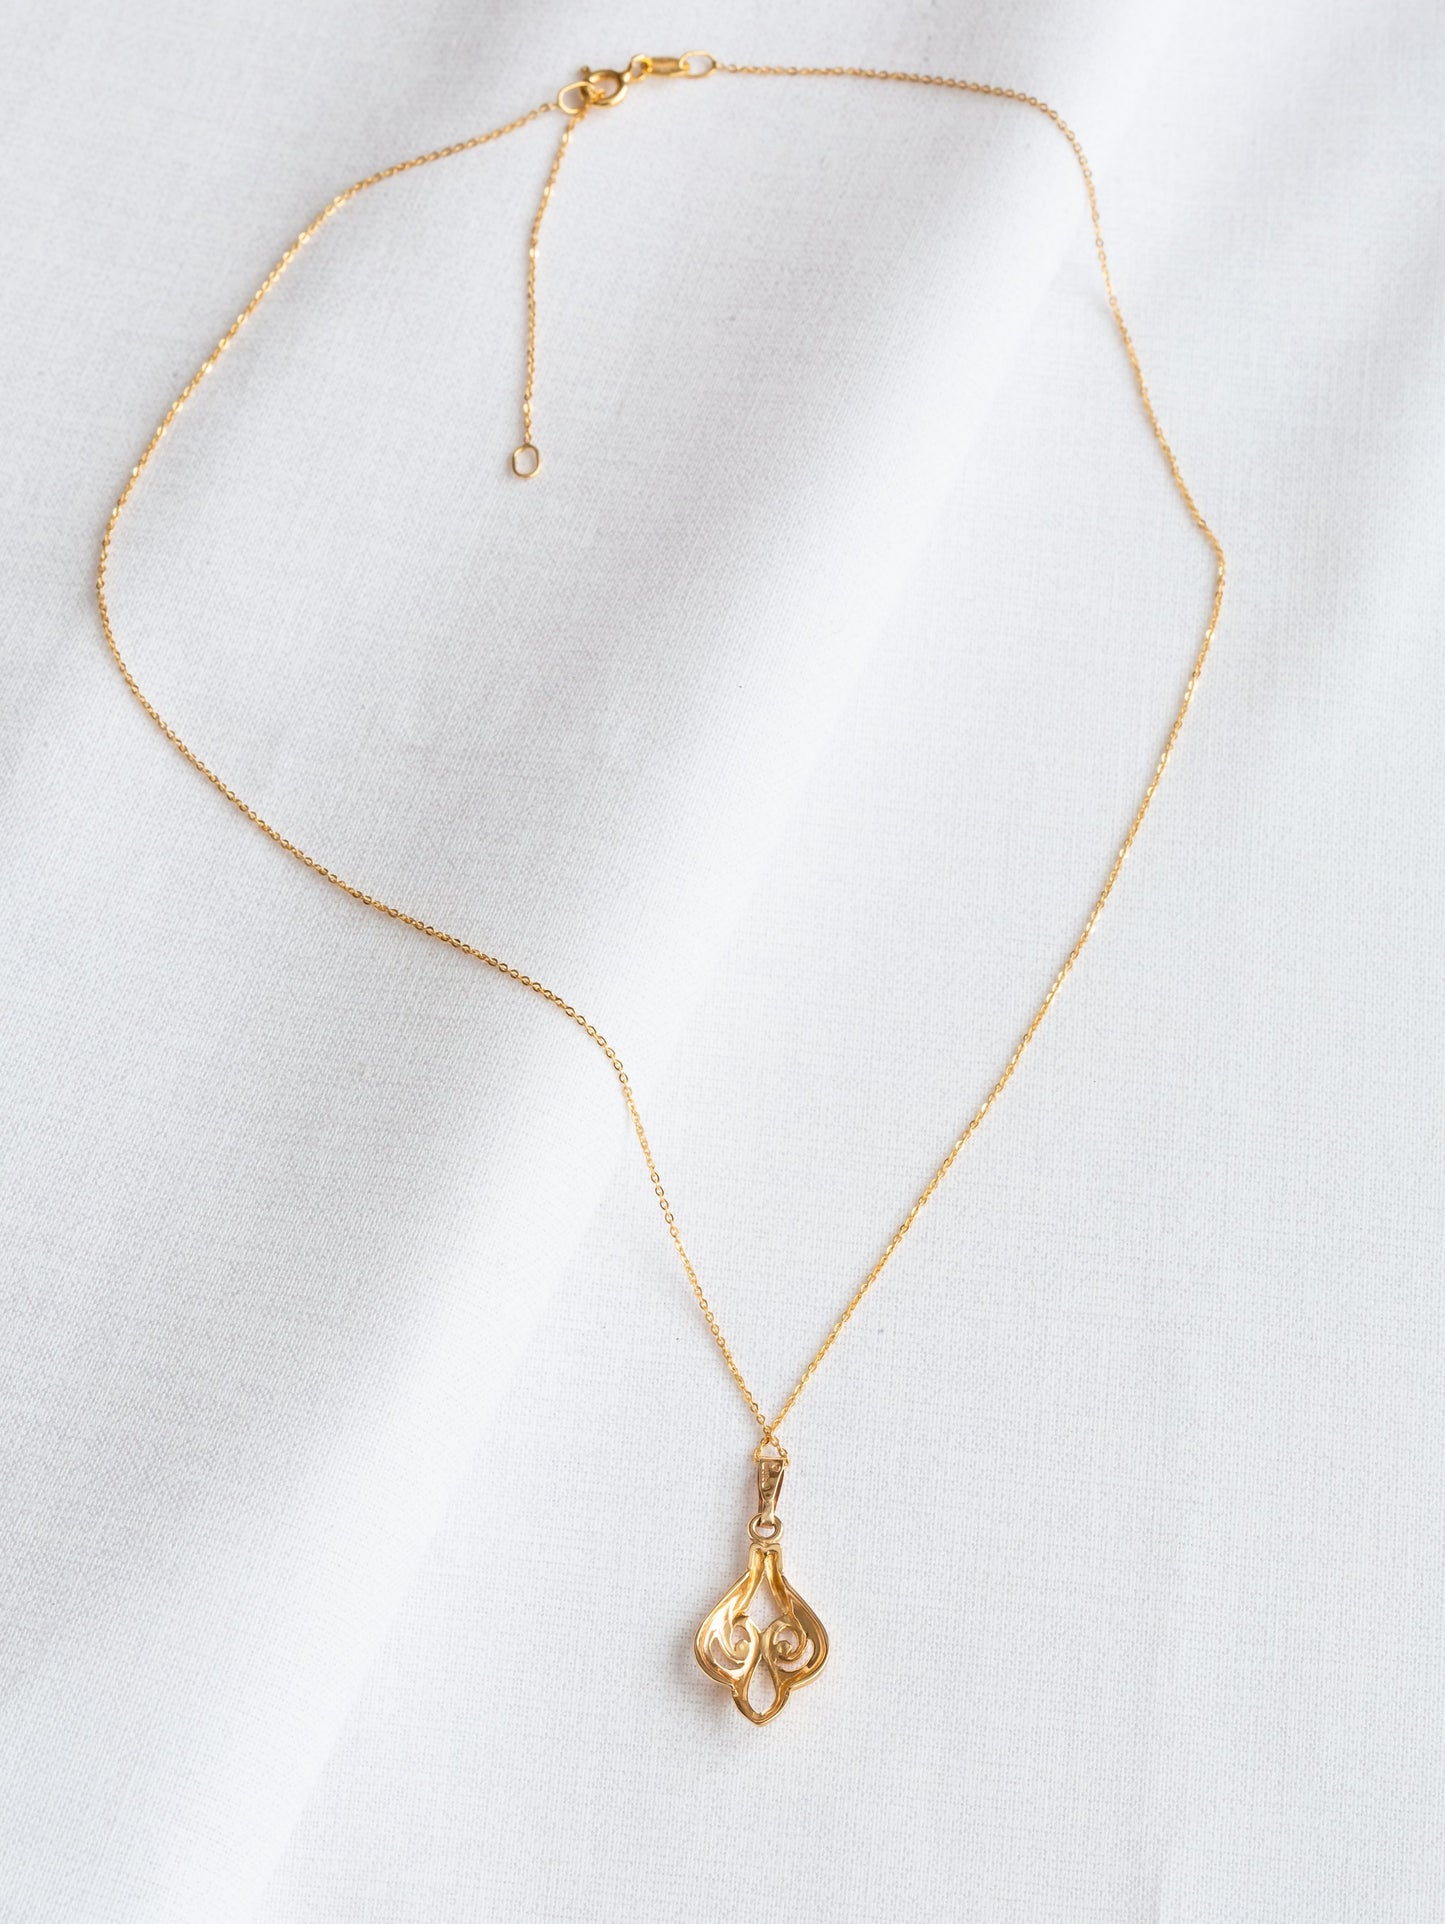 Vintage 9ct Gold Fleur De Lis Pendant Necklace